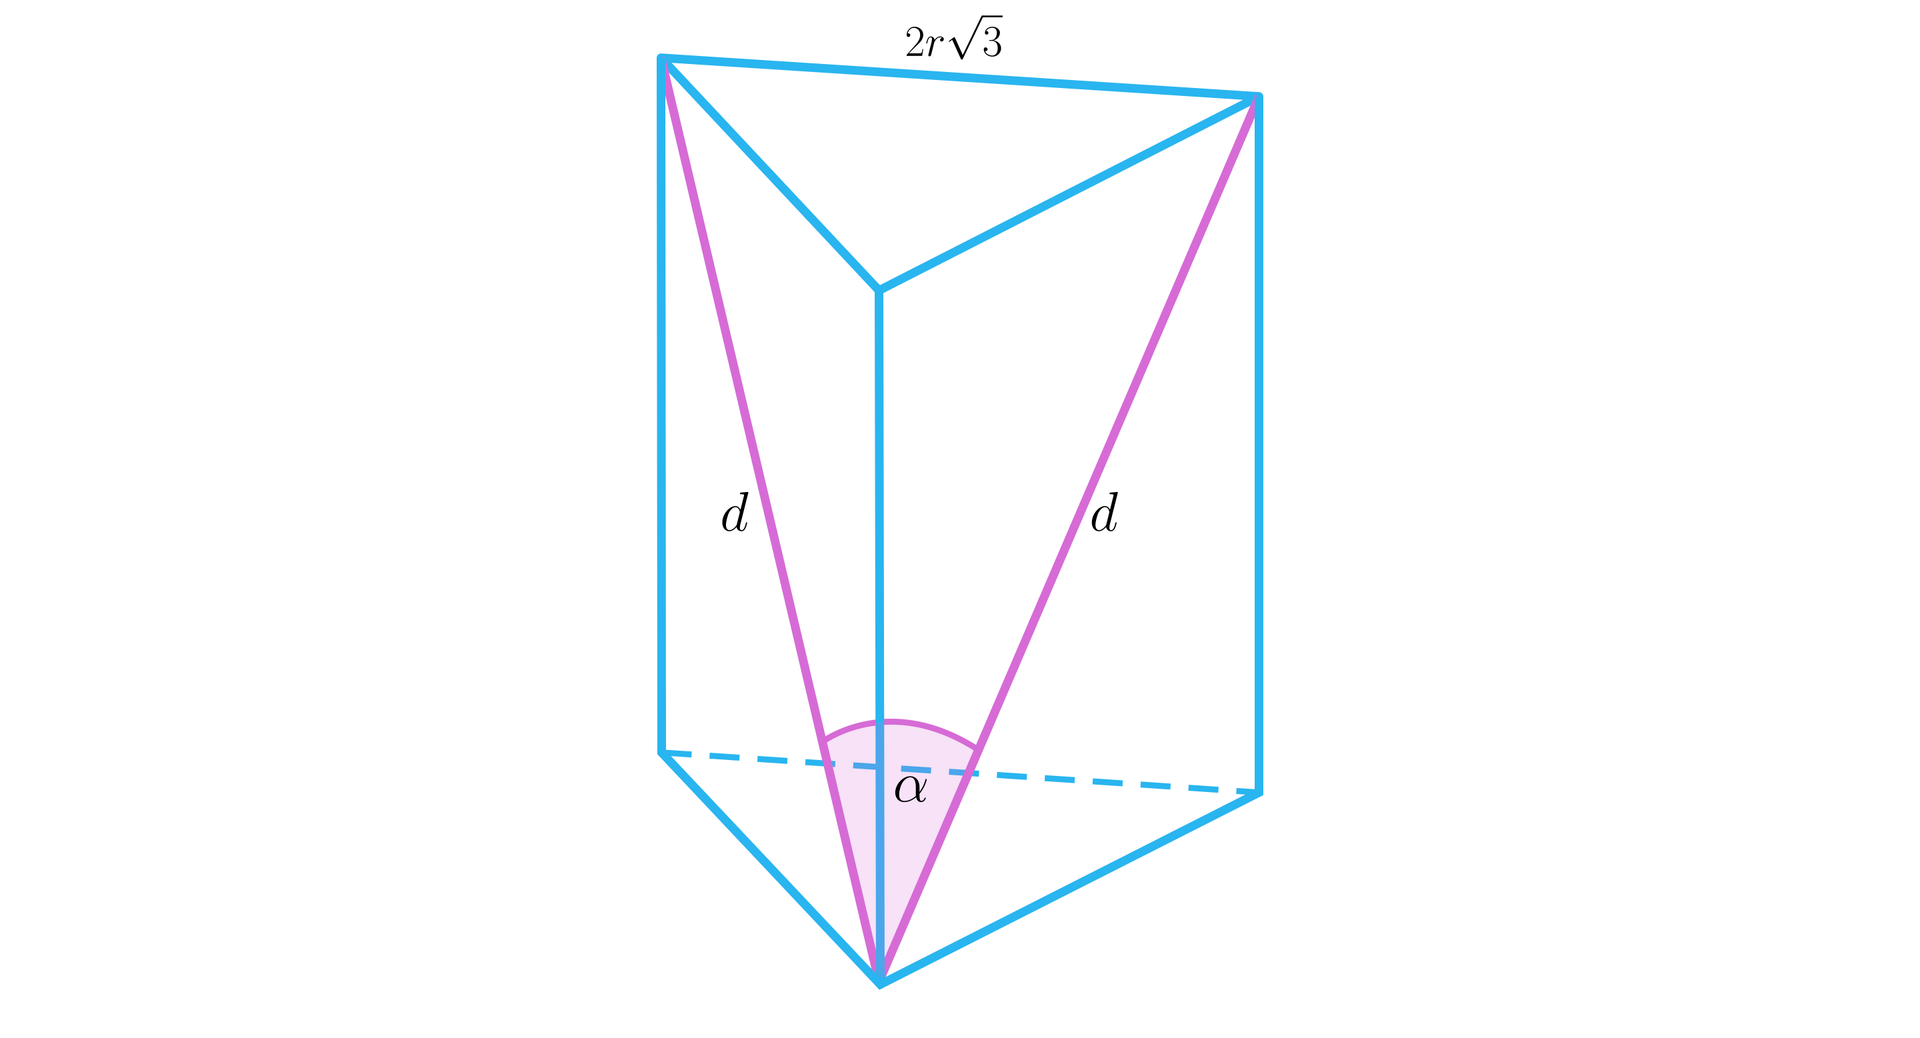 Rysunek przedstawia graniastosłup prawidłowy trójkątny, którego ramię ma długość 2r3. W graniastosłupie zaznaczono przekątne dwóch ścian bocznych i każdą z nich podpisano literą d. Kąt między przekątnymi zaznaczono literą alfa.